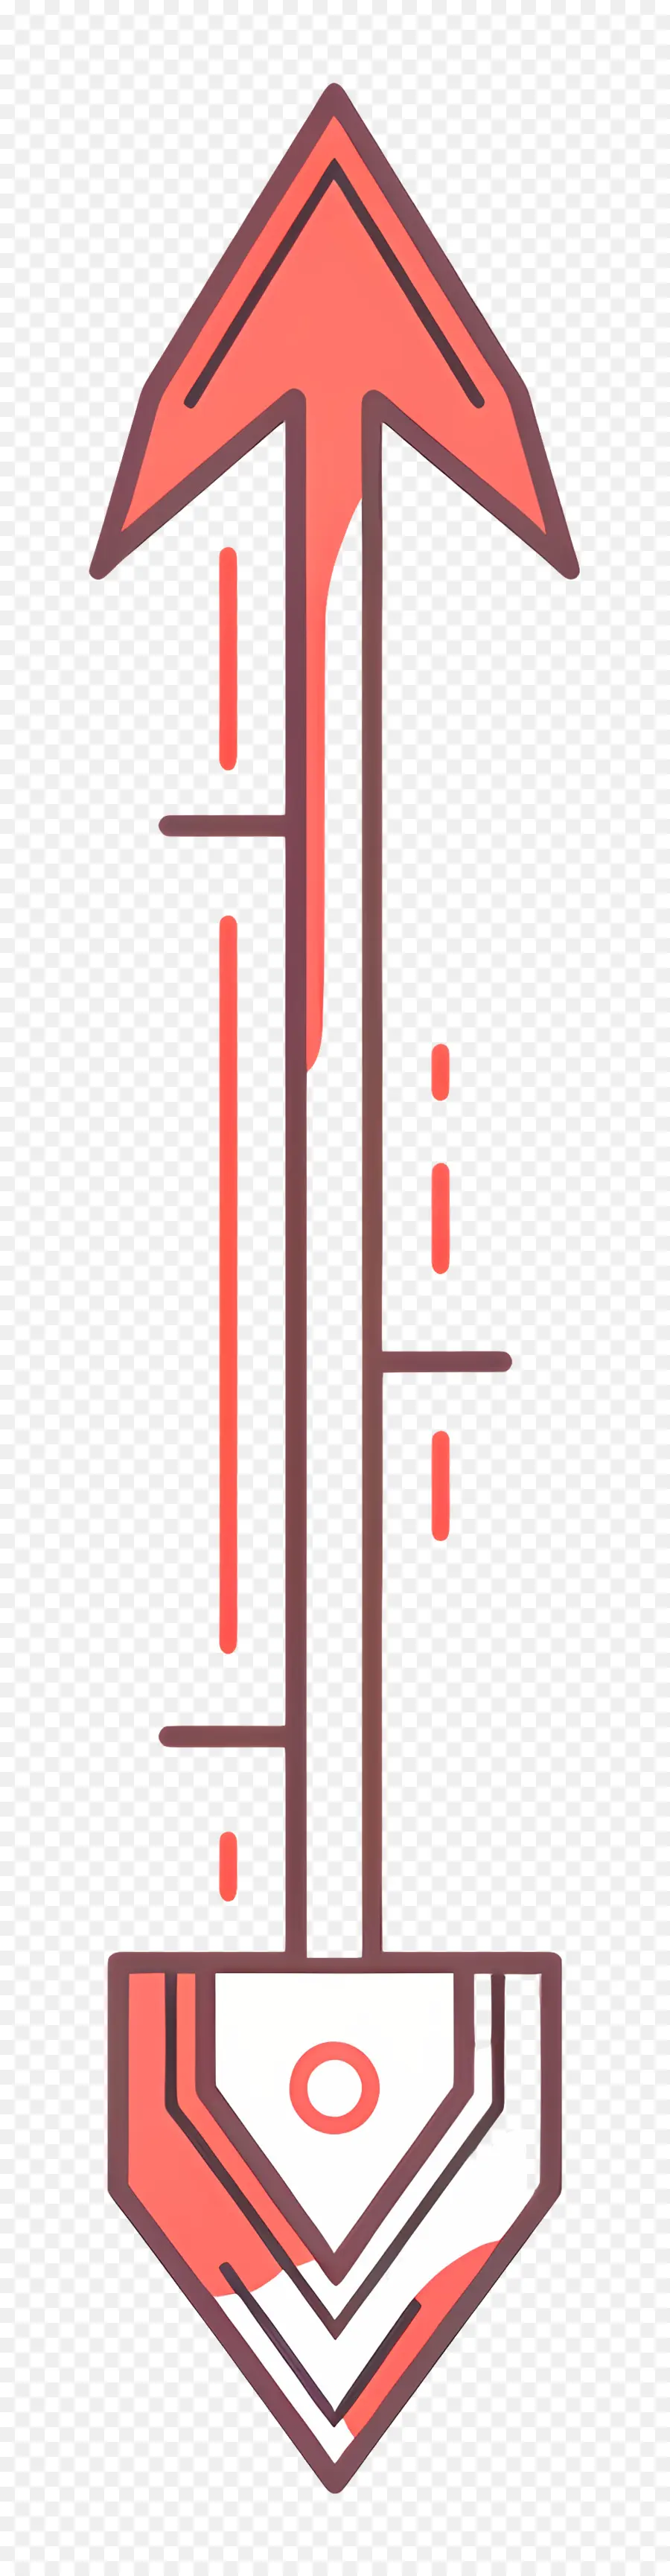 freccia - Freccia dettagliata in bianco e nero sul cerchio